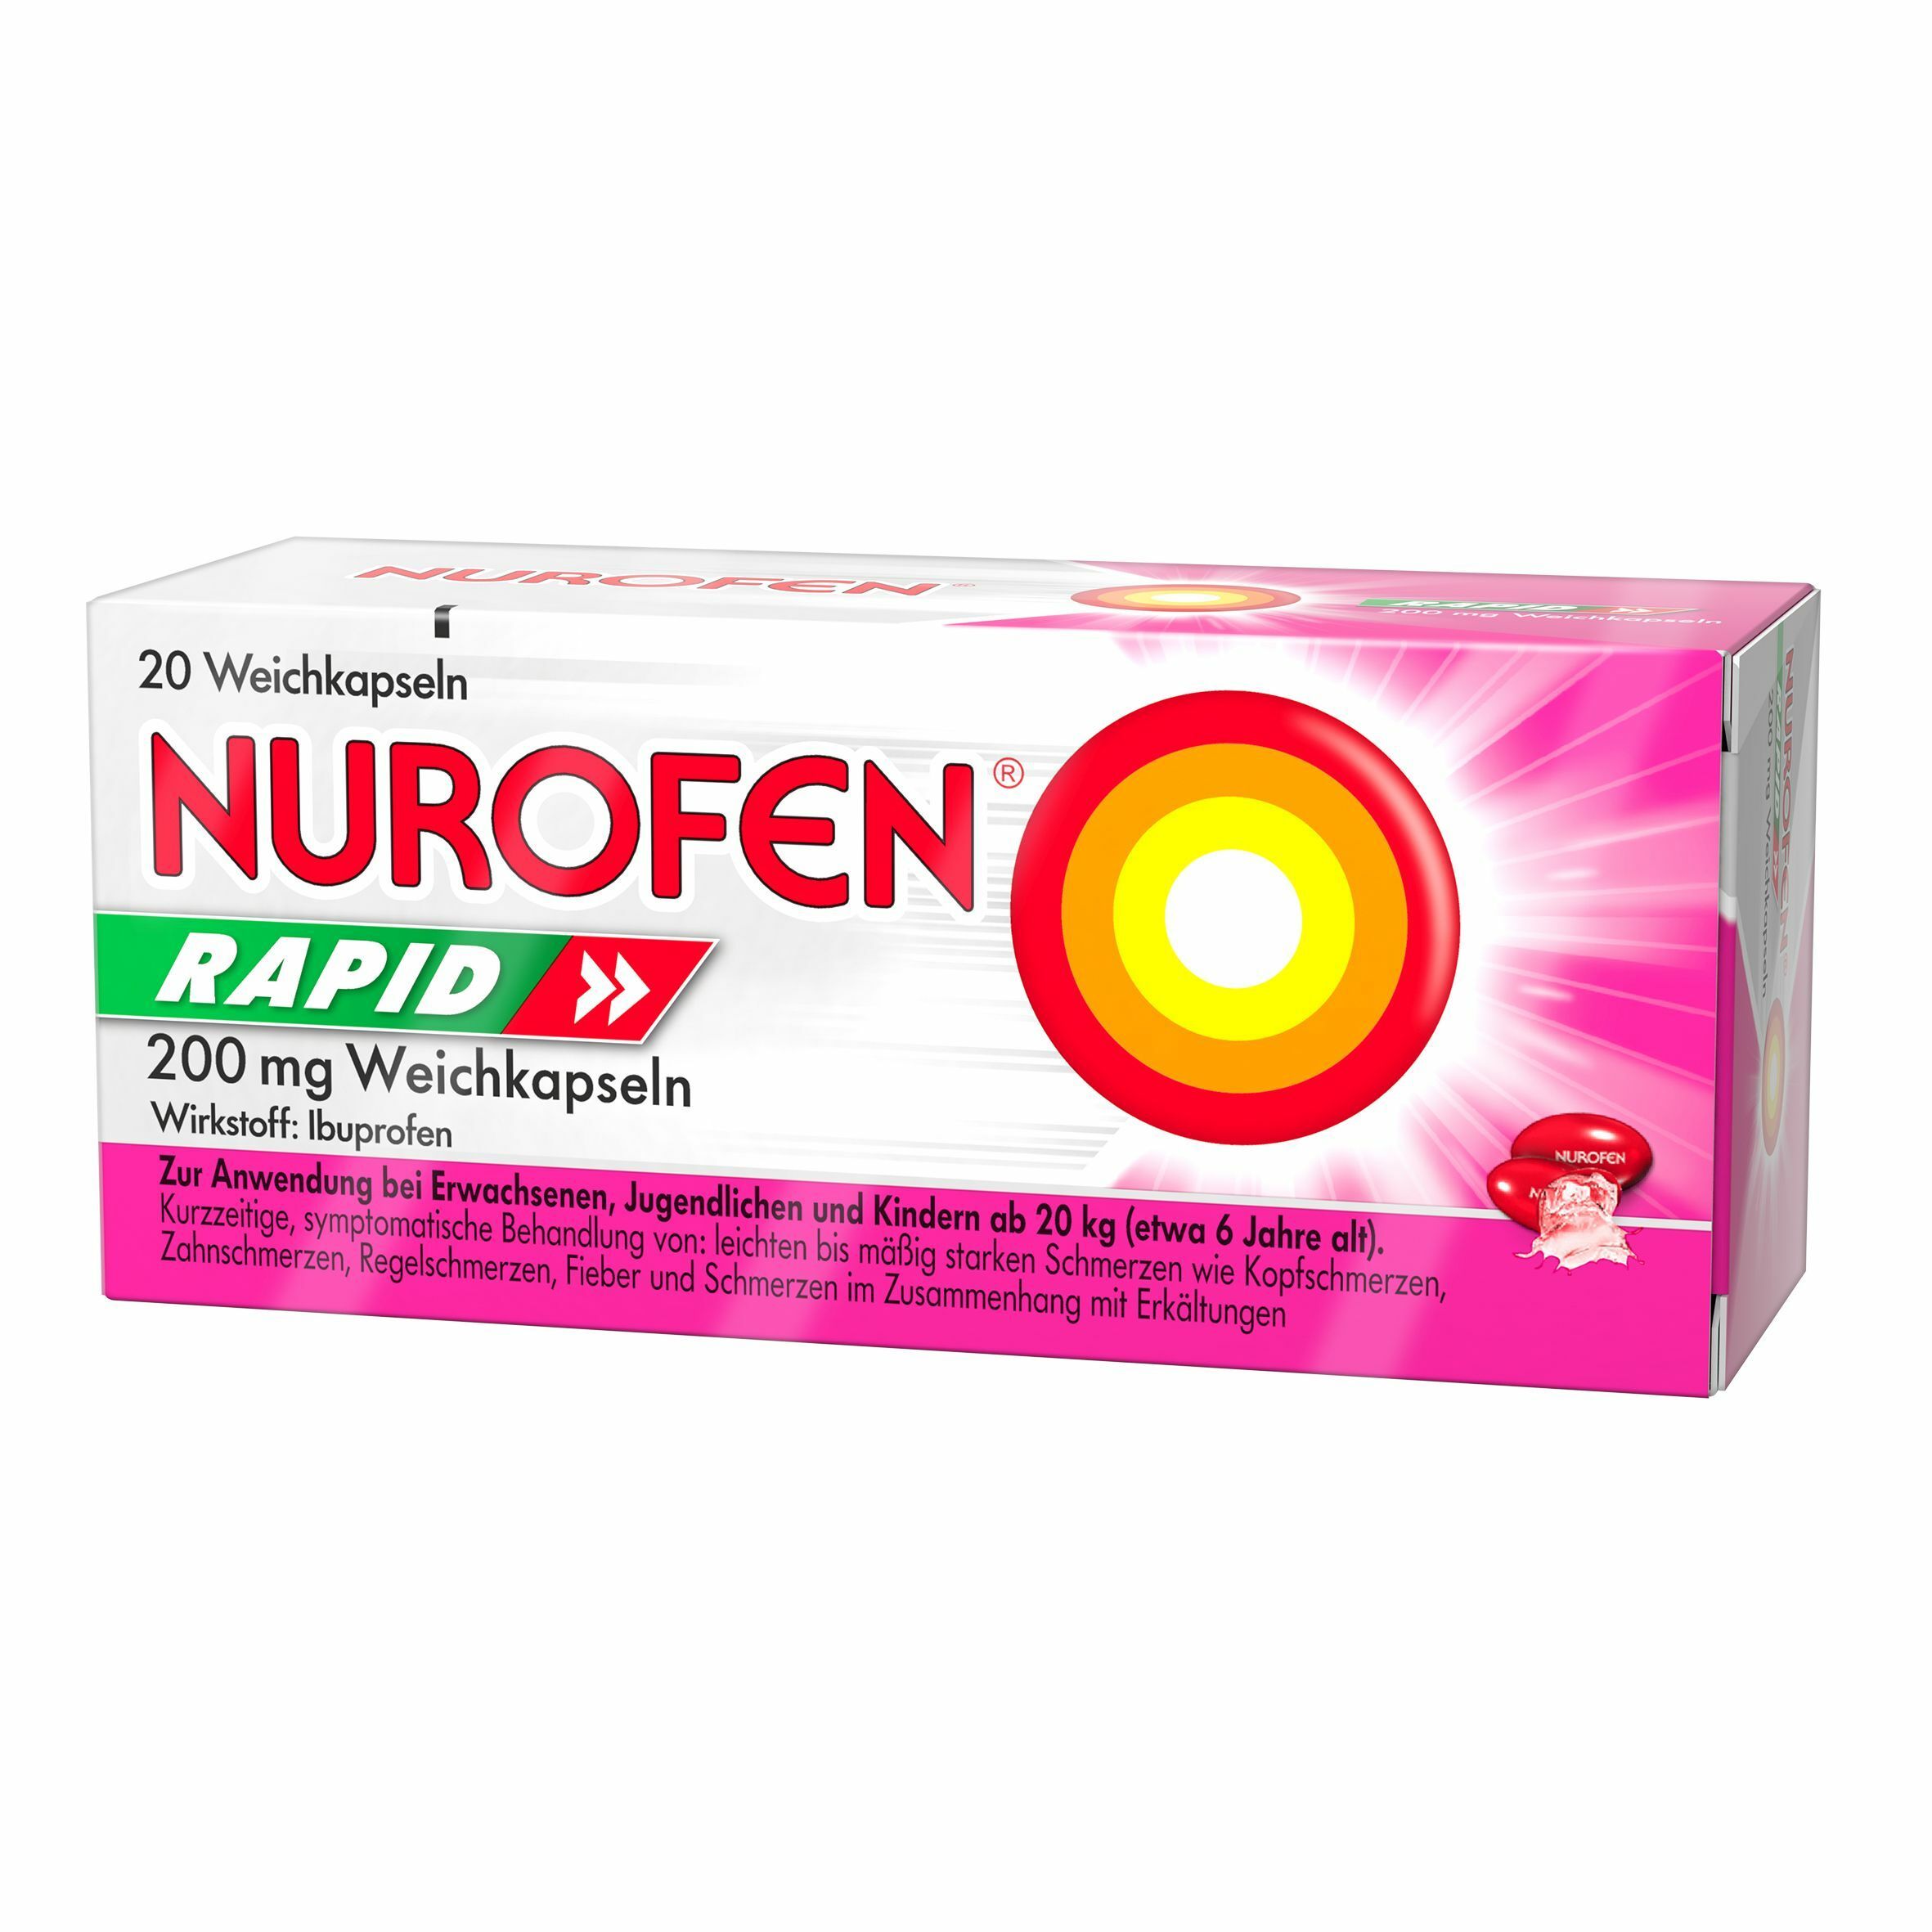 NUROFEN® RAPID 200 mg